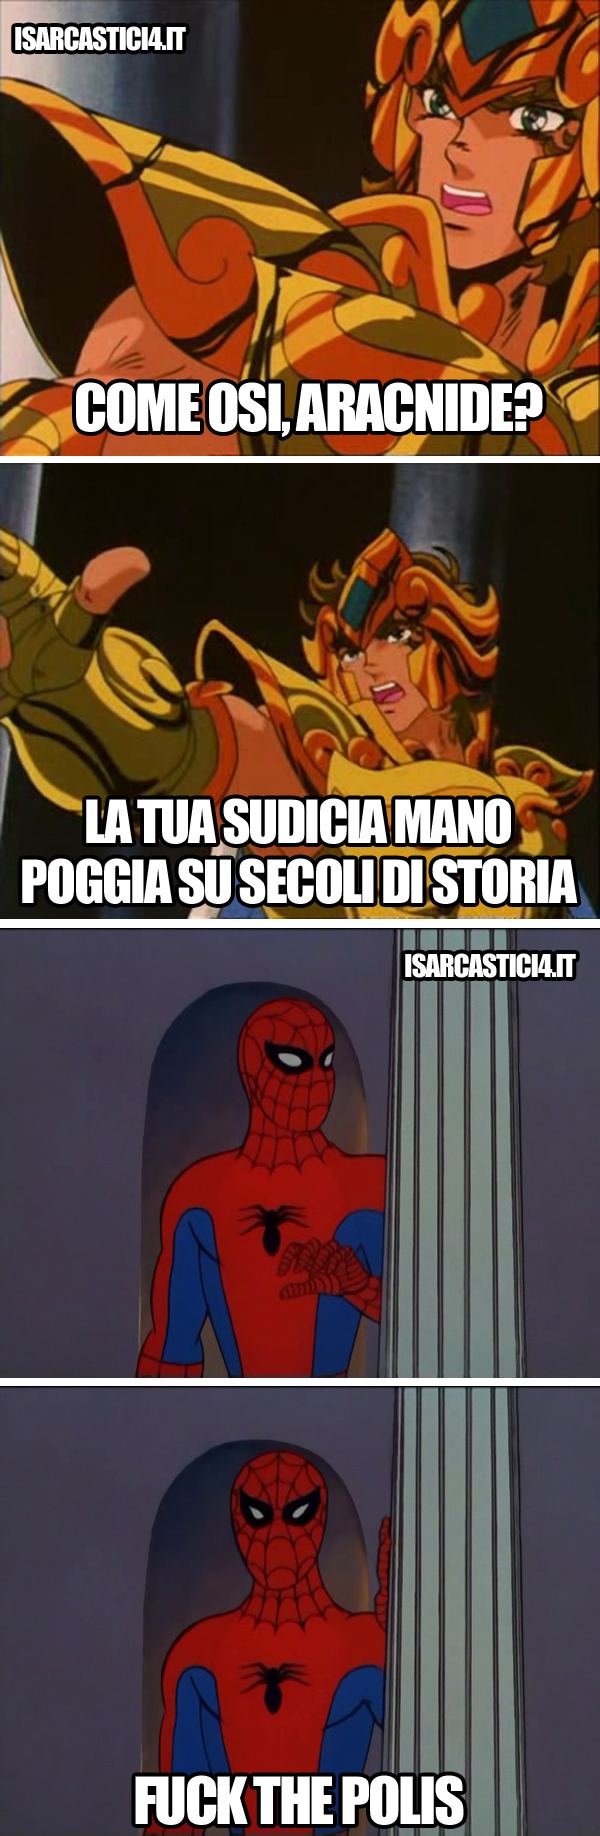 Cavalieri Dello Zodiaco, Spider-Man meme ita - Fuck the police